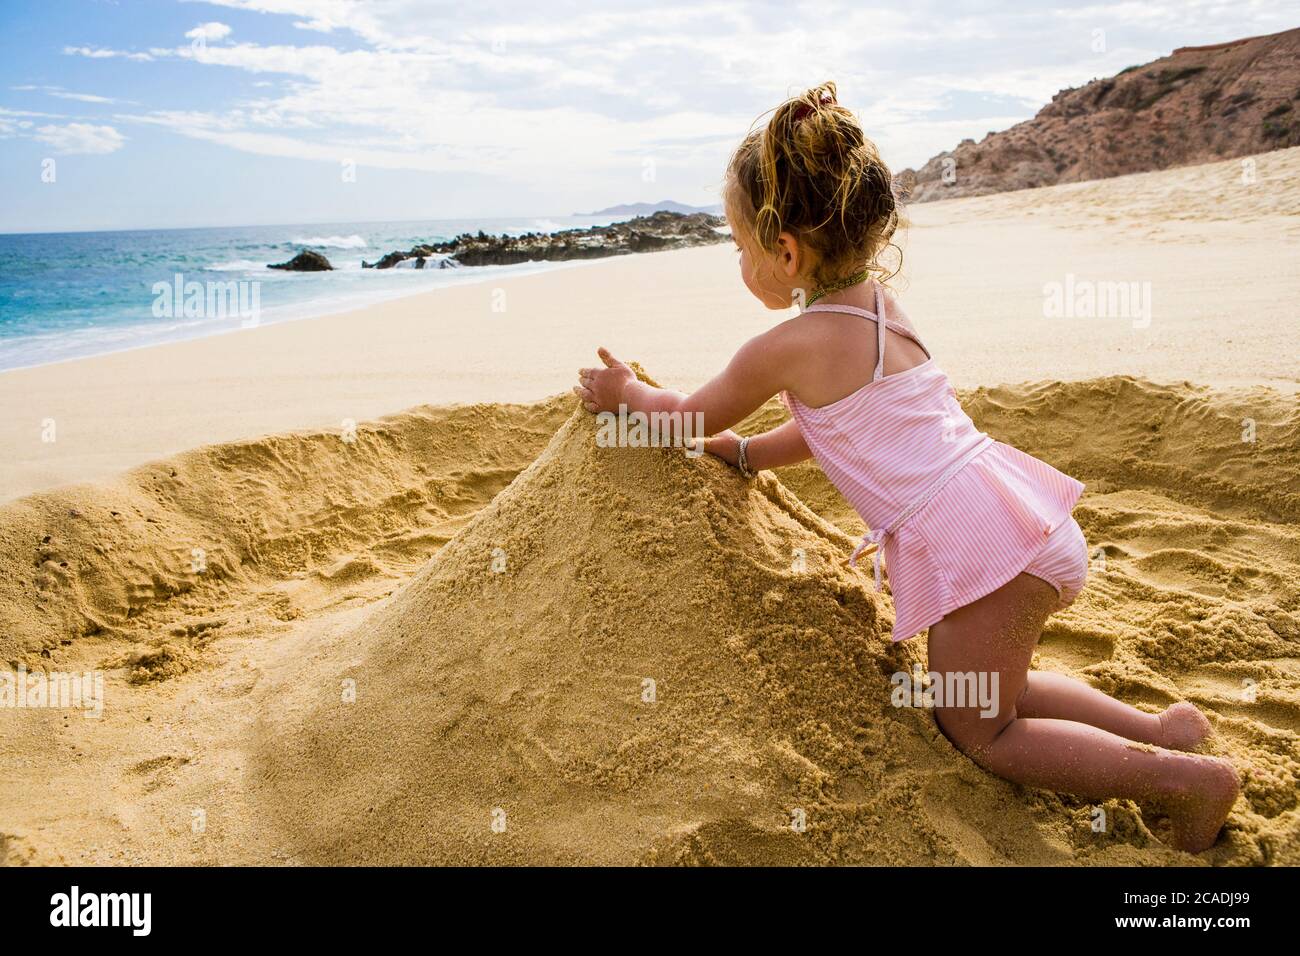 Giovane ragazza che gioca nella sabbia, Cabo San Lucas, Messico Foto Stock